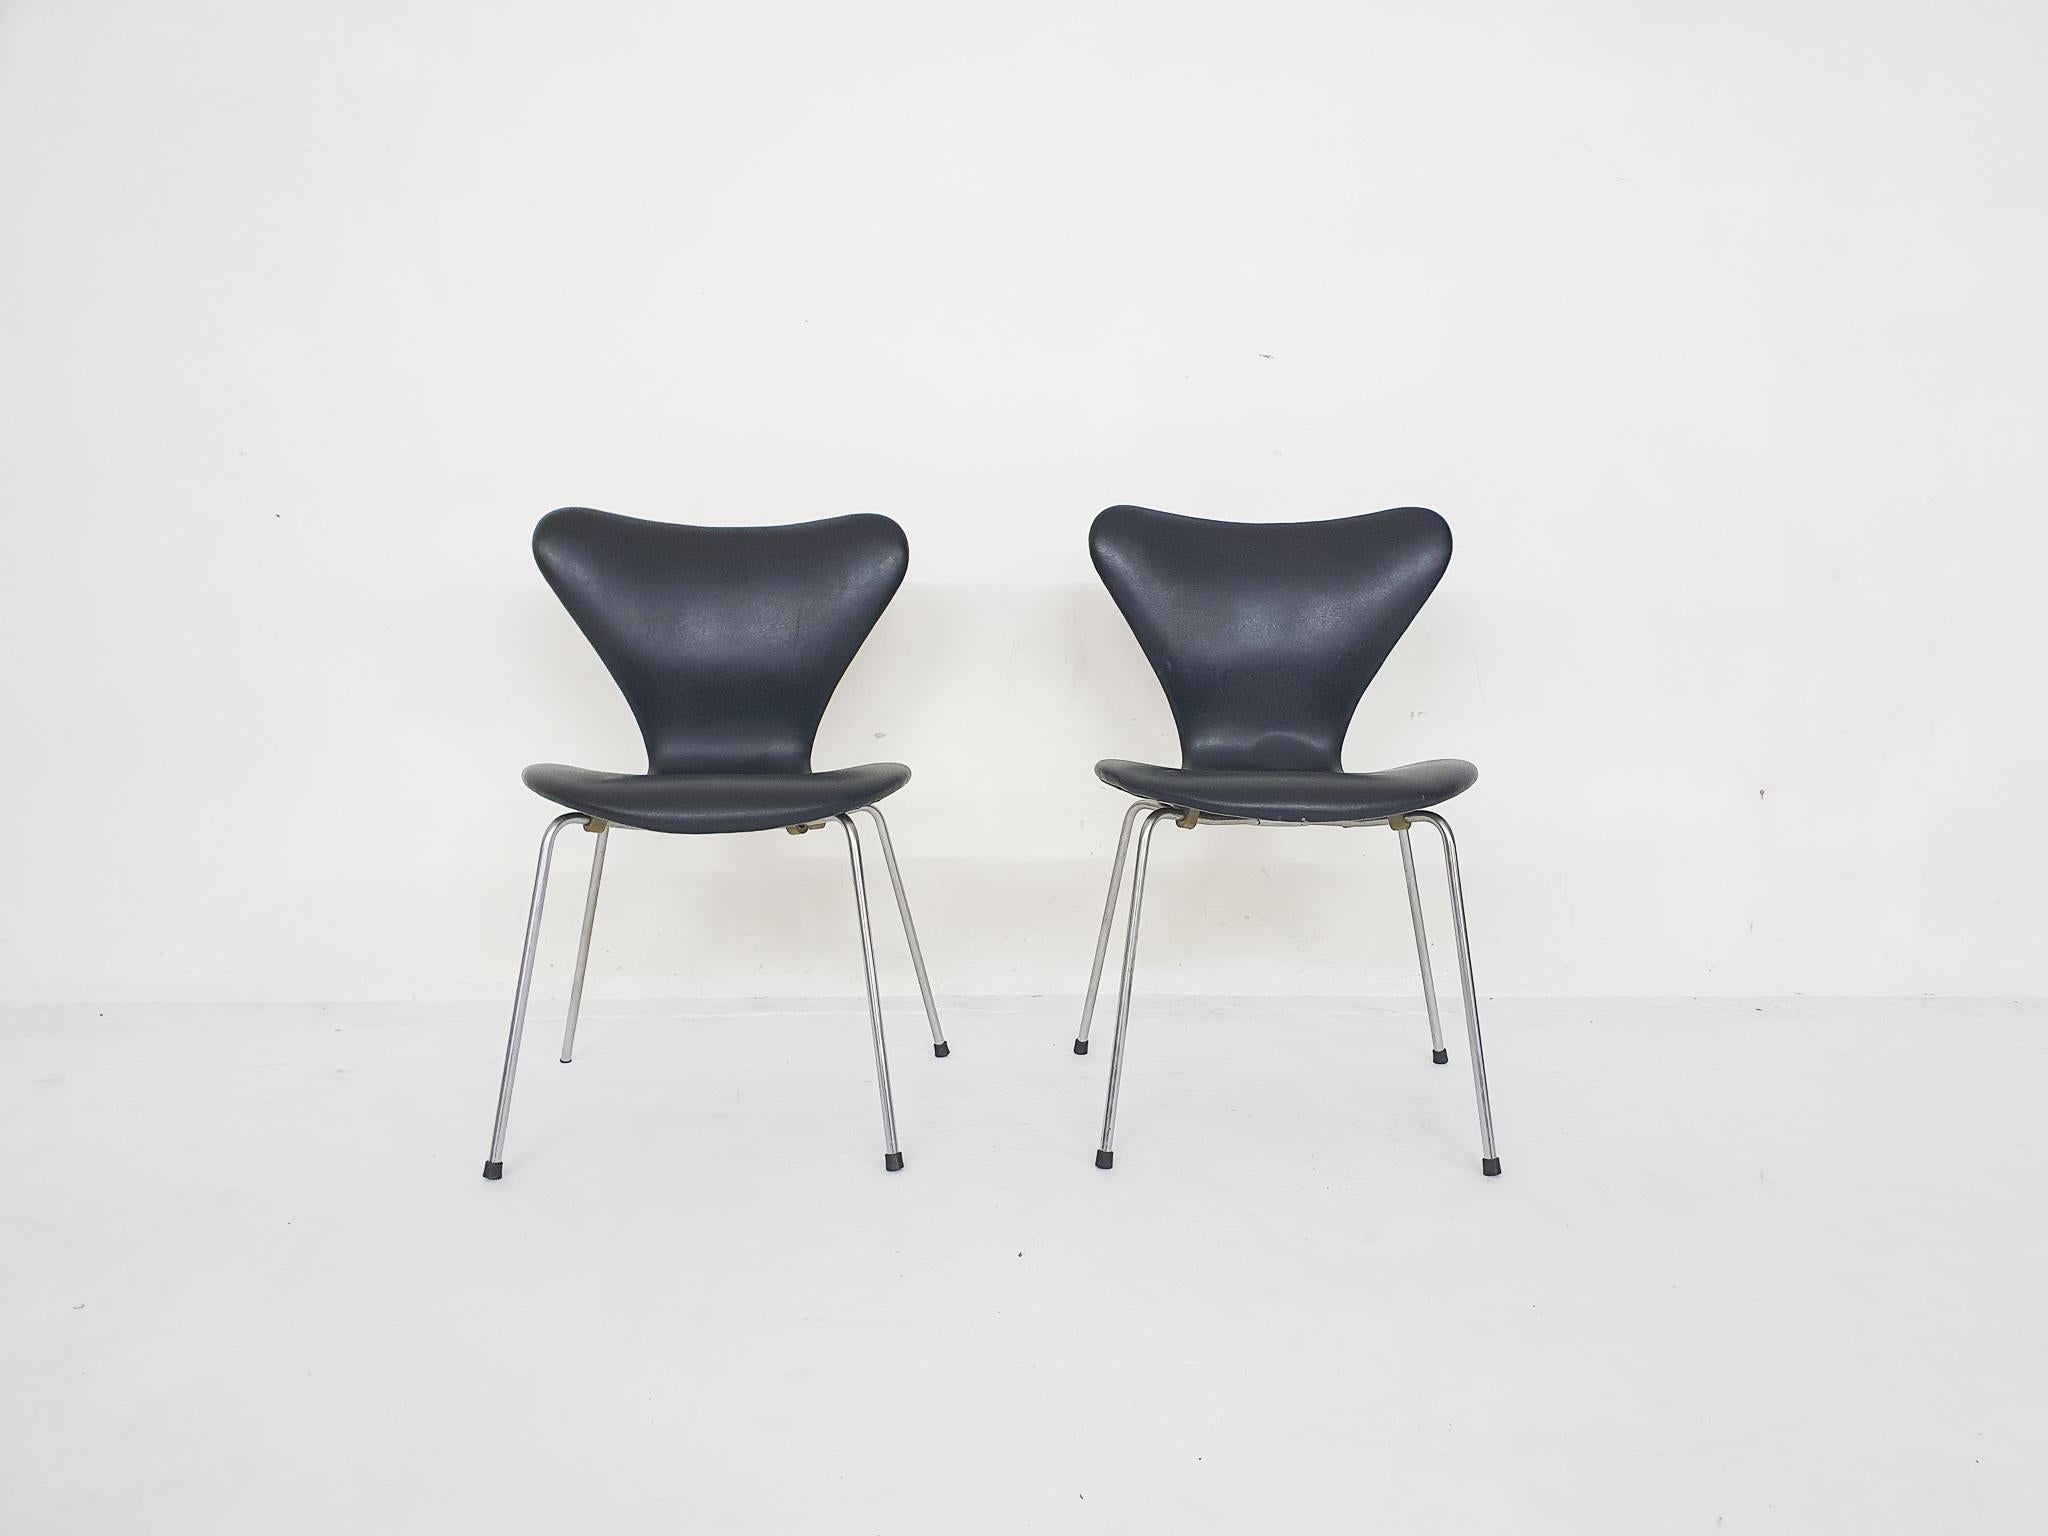 Juego de 2 sillas Butterfly de Arne Jacobsen para Fritz Hansen. Estructura de metal y tapicería de piel sintética negra. En buen estado original. Algo de óxido en el bastidor.

Arne Jacobsen
Arne Jacobsen fue un arquitecto y diseñador danés. Se le